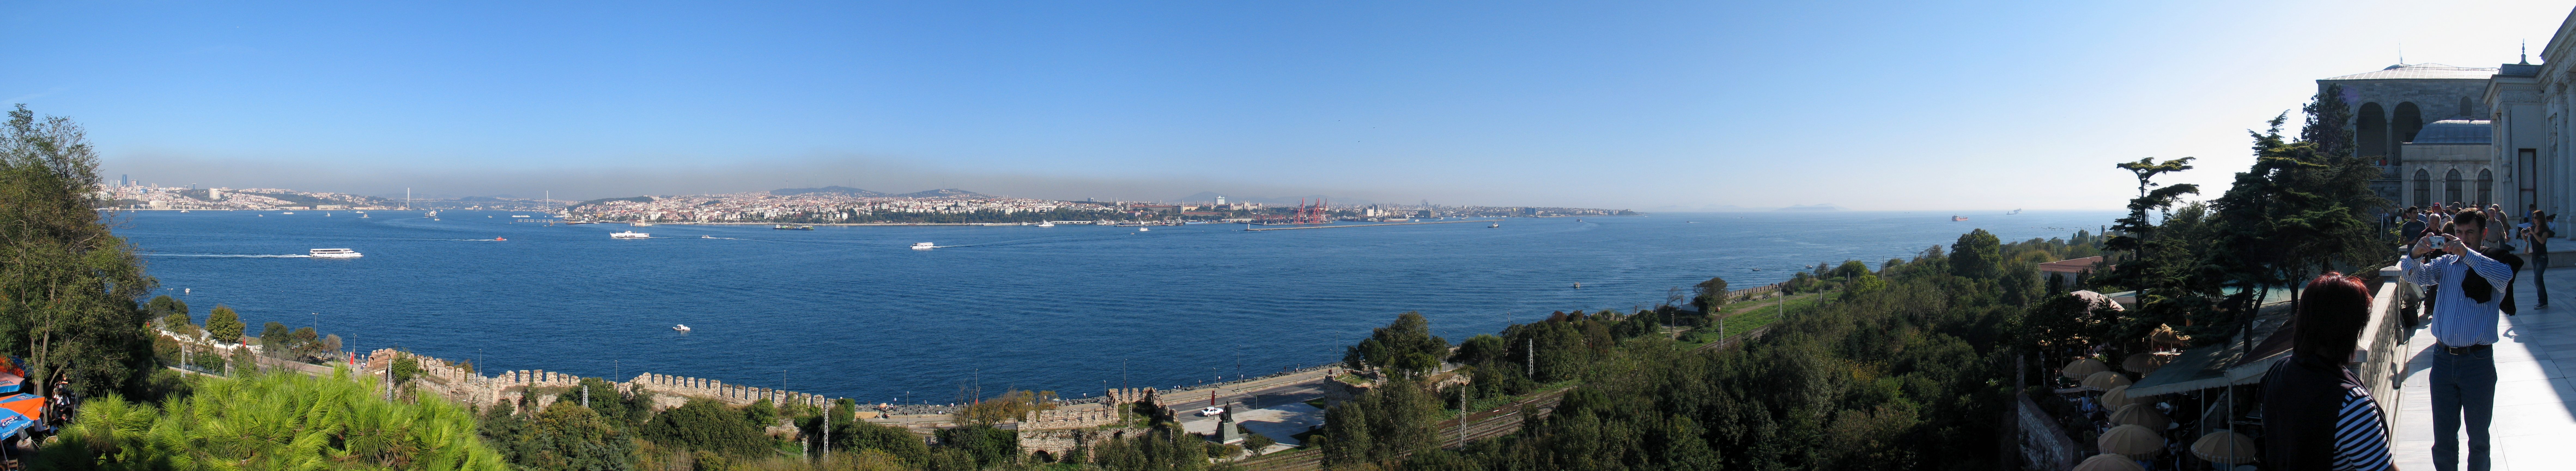 336_3628ff_Topkapi_Sarayi_Mecidiye_Koeskue_Aussichts-Panorama.jpg